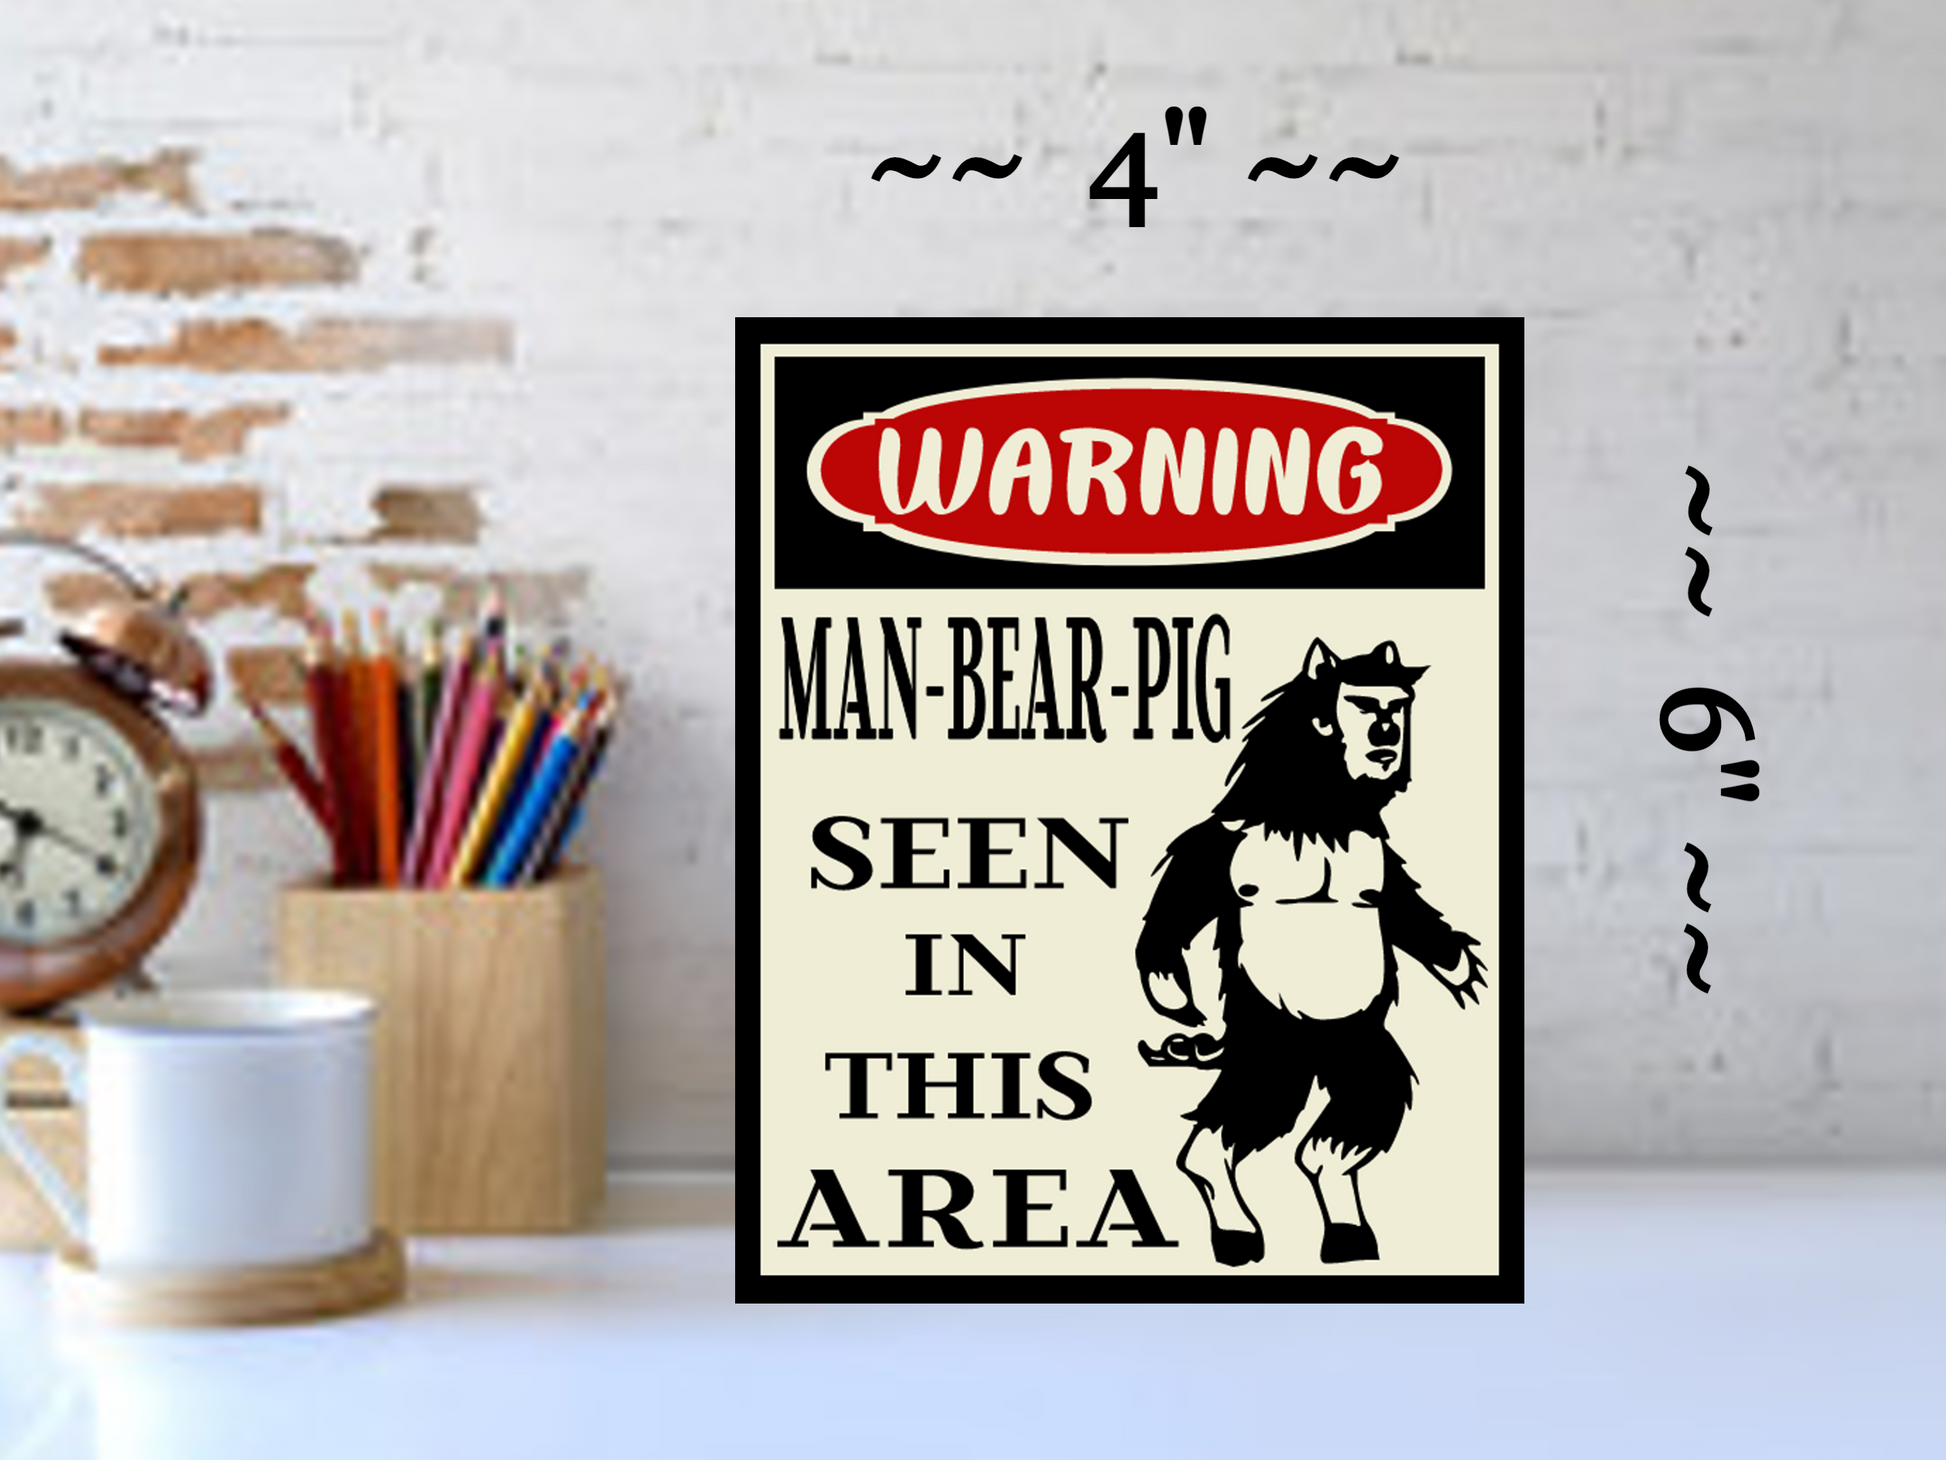 south park sign man bear pig warning sign